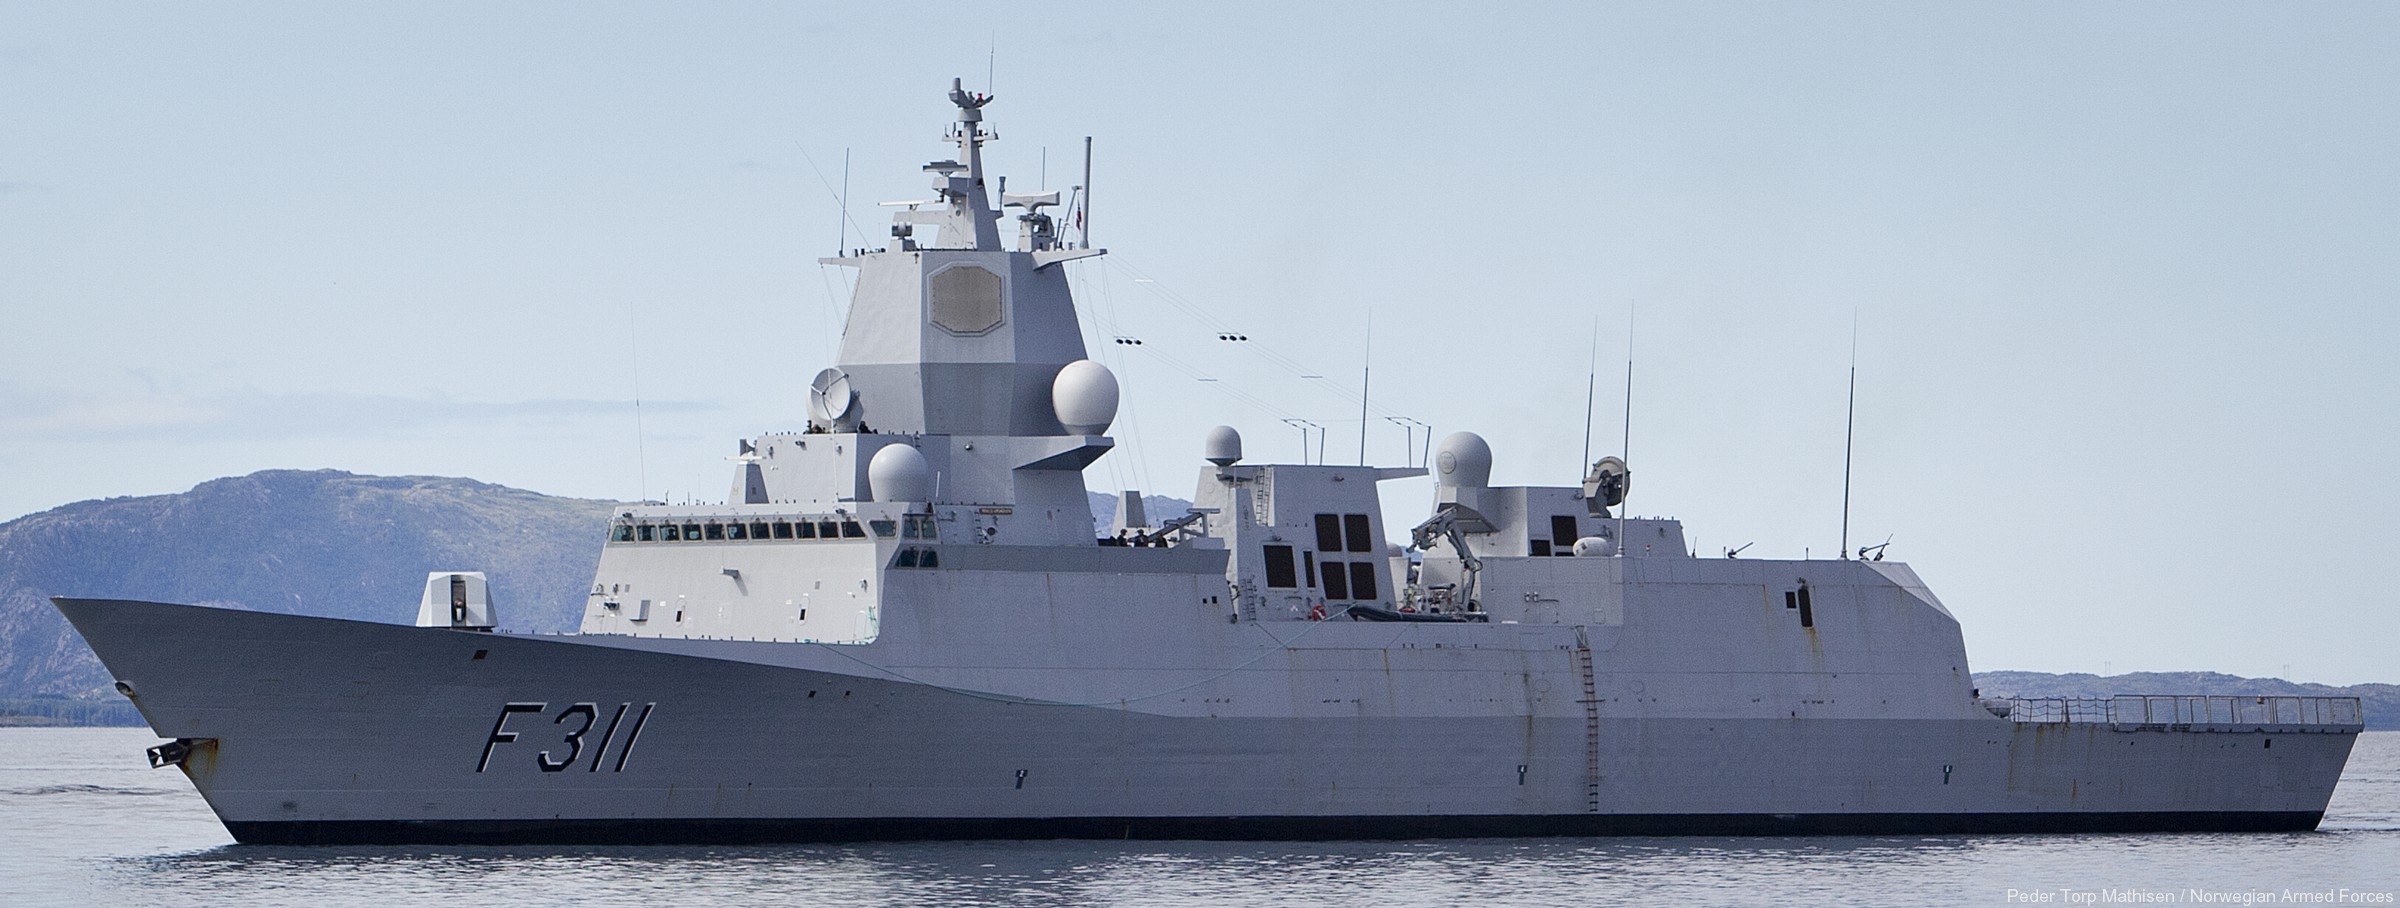 f-311 hnoms roald amundsen knm nansen class frigate royal norwegian navy sjoforsvaret 63